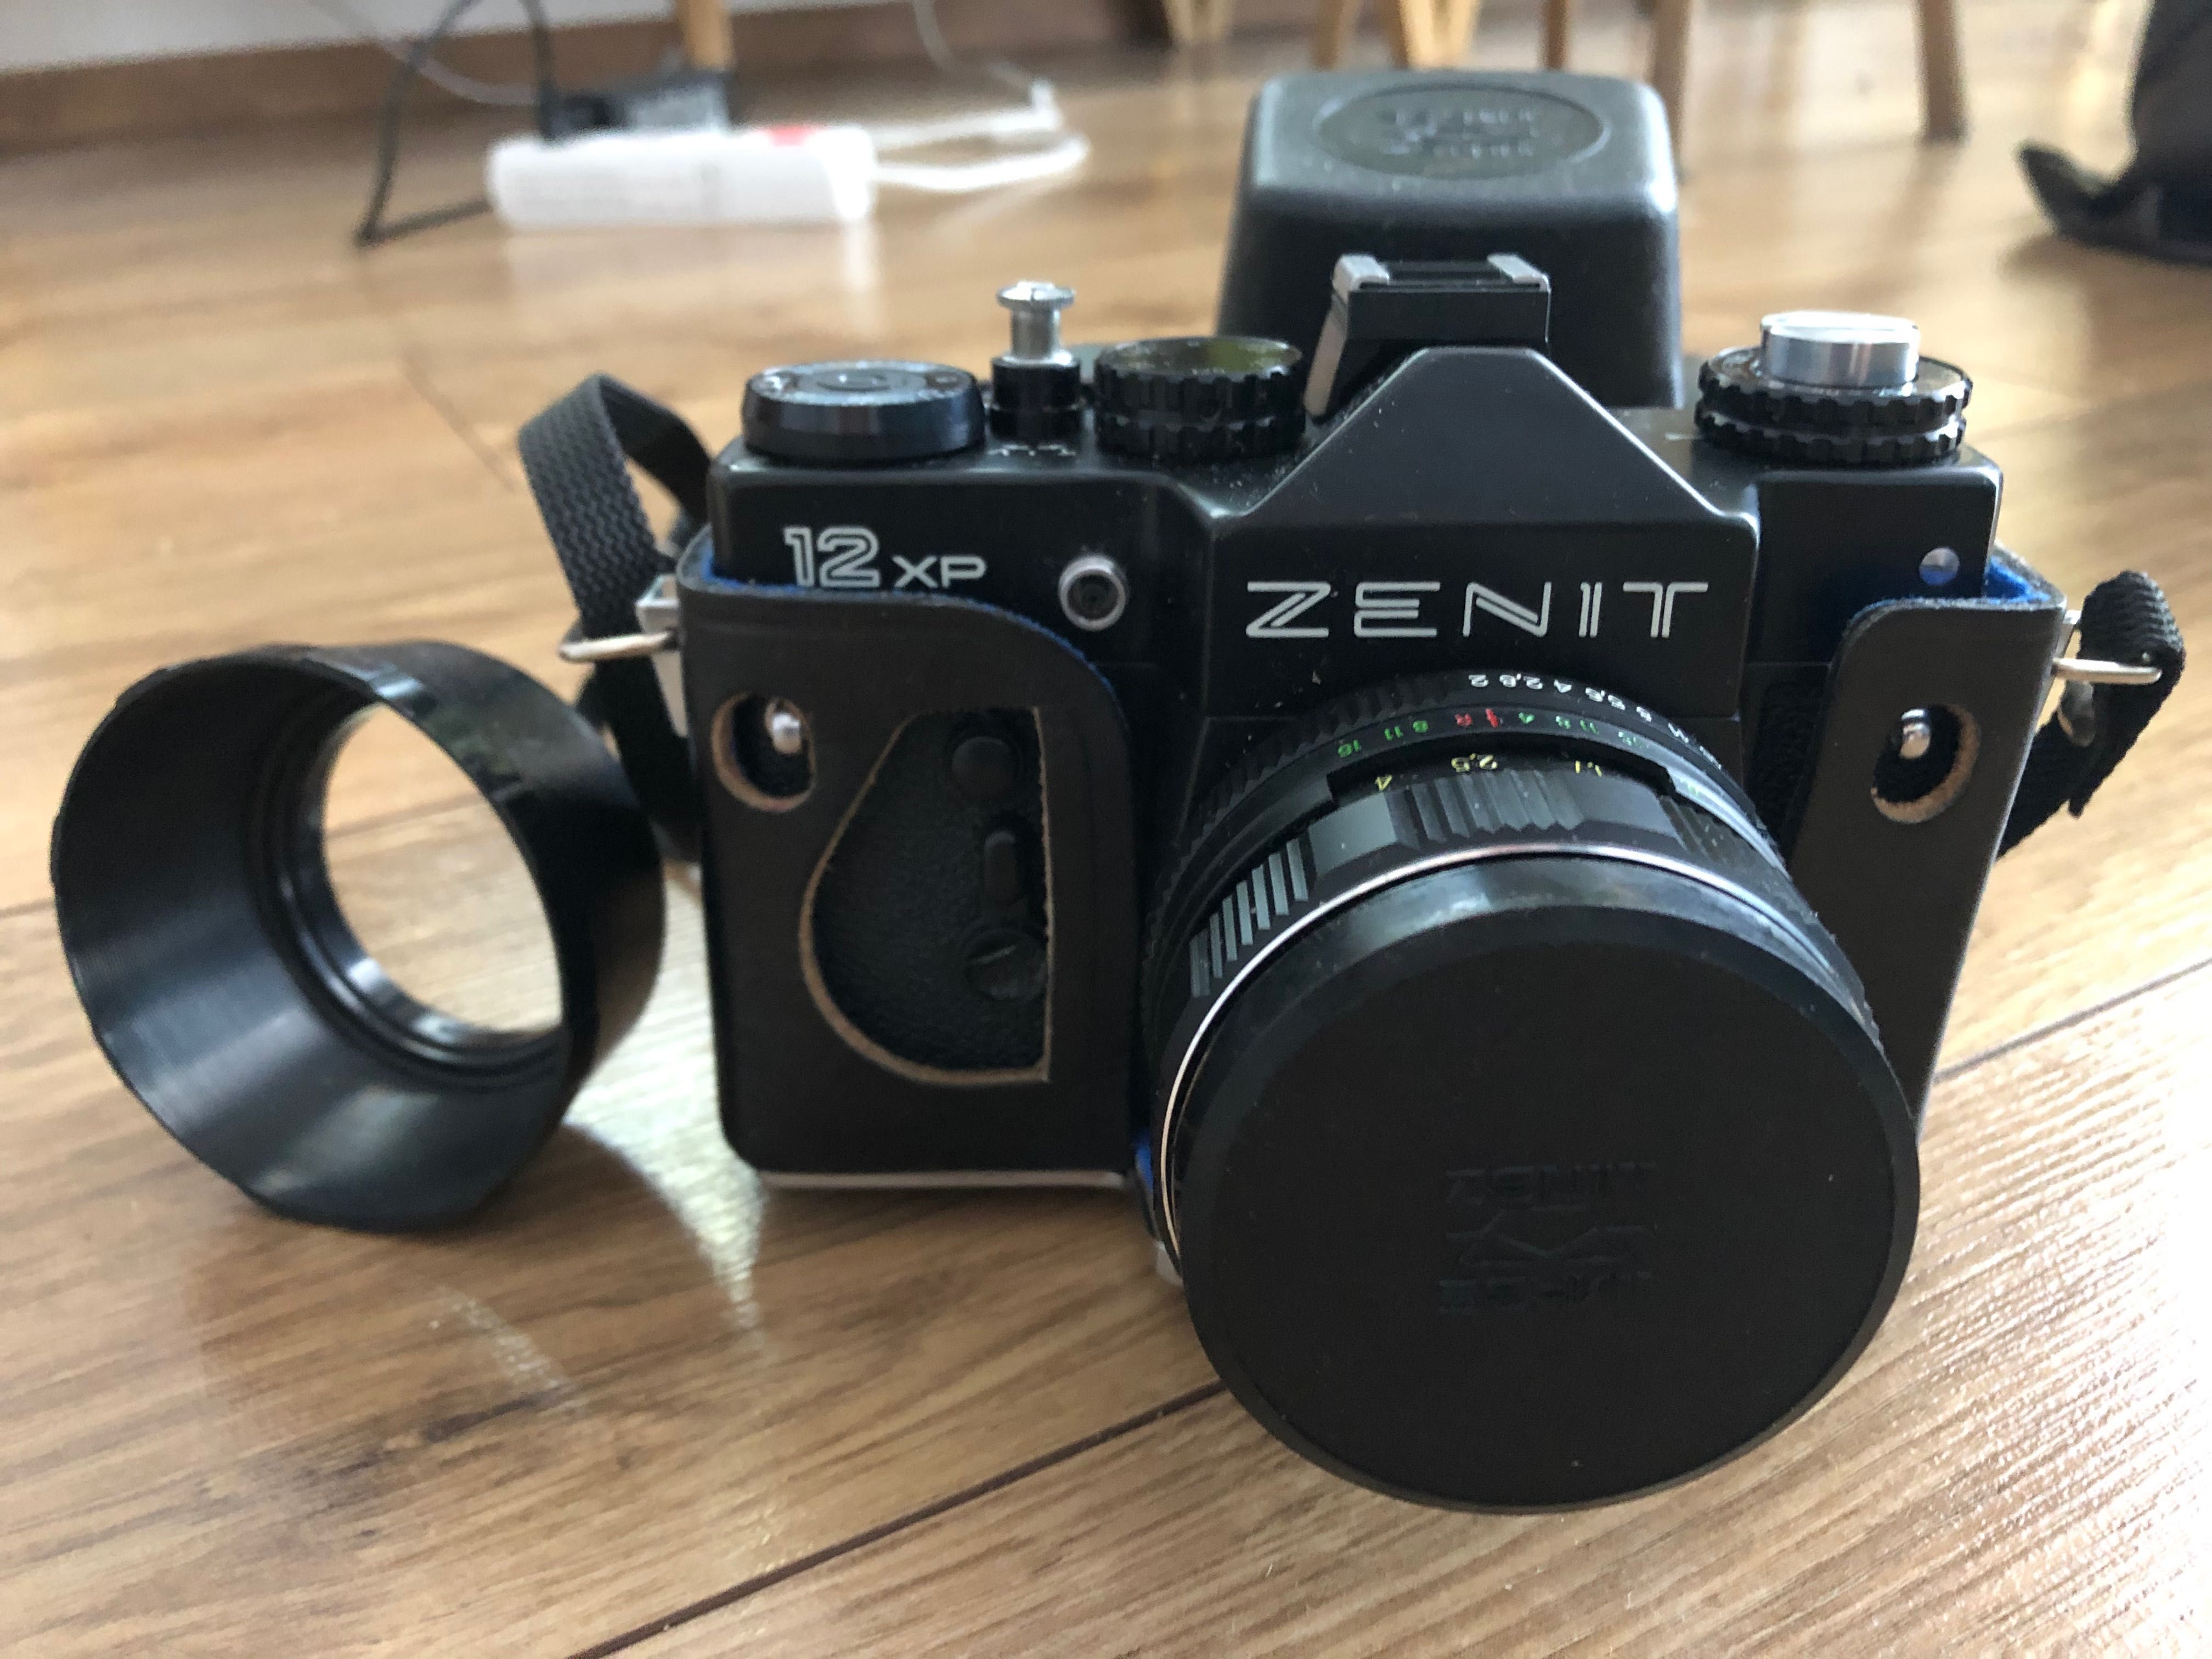 Aparat fotograficzny Zenit 12xp